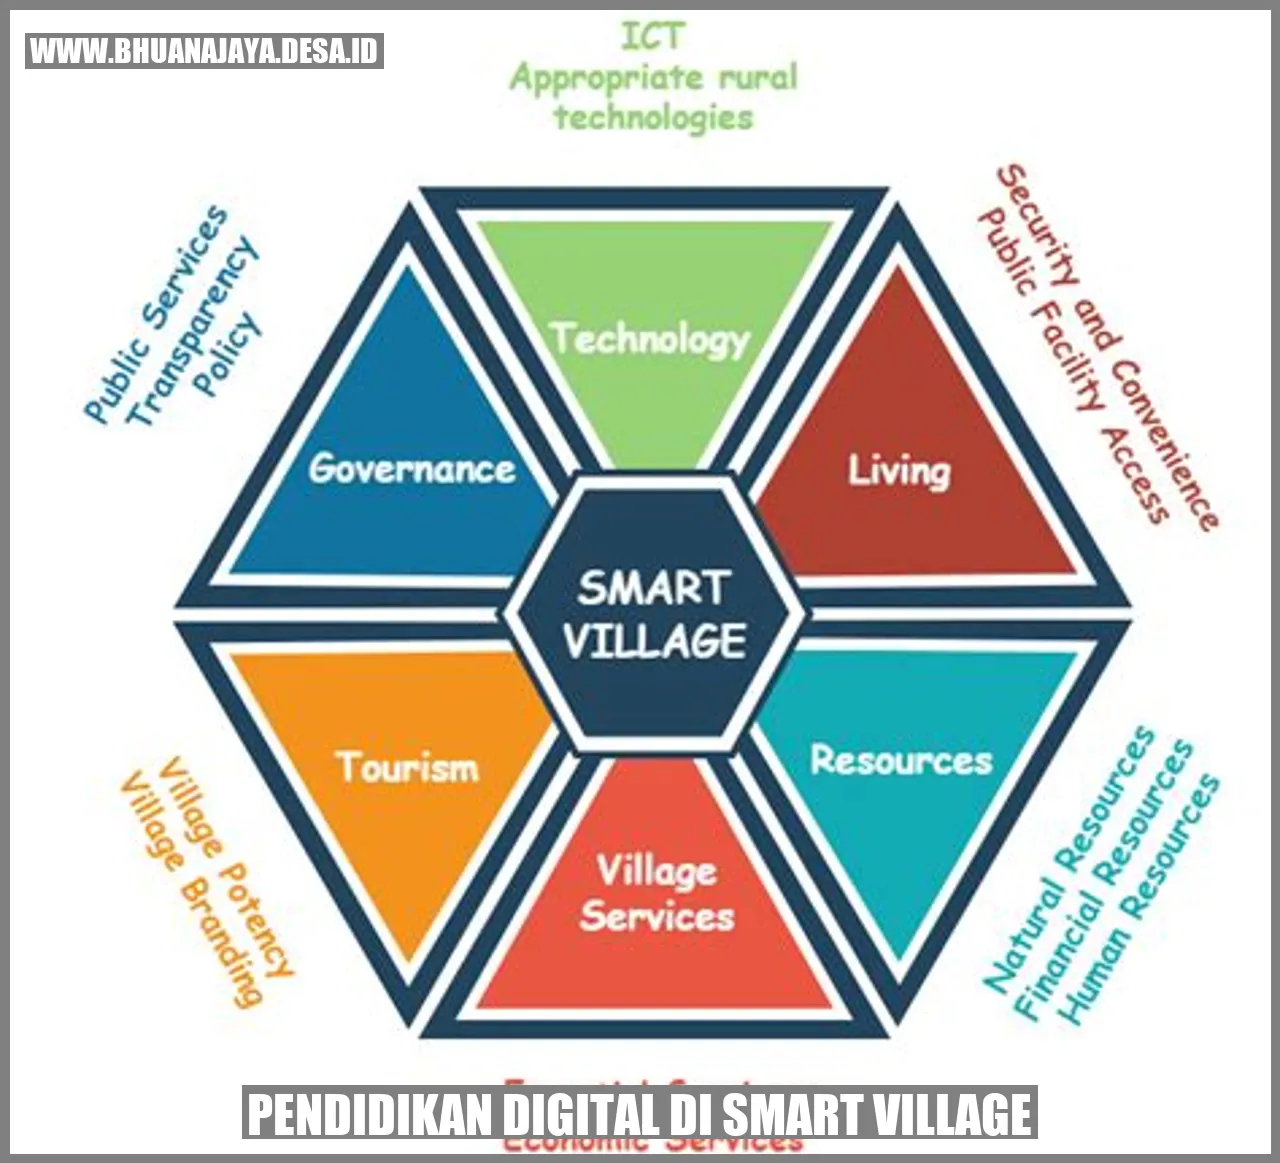 Pendidikan digital di smart village